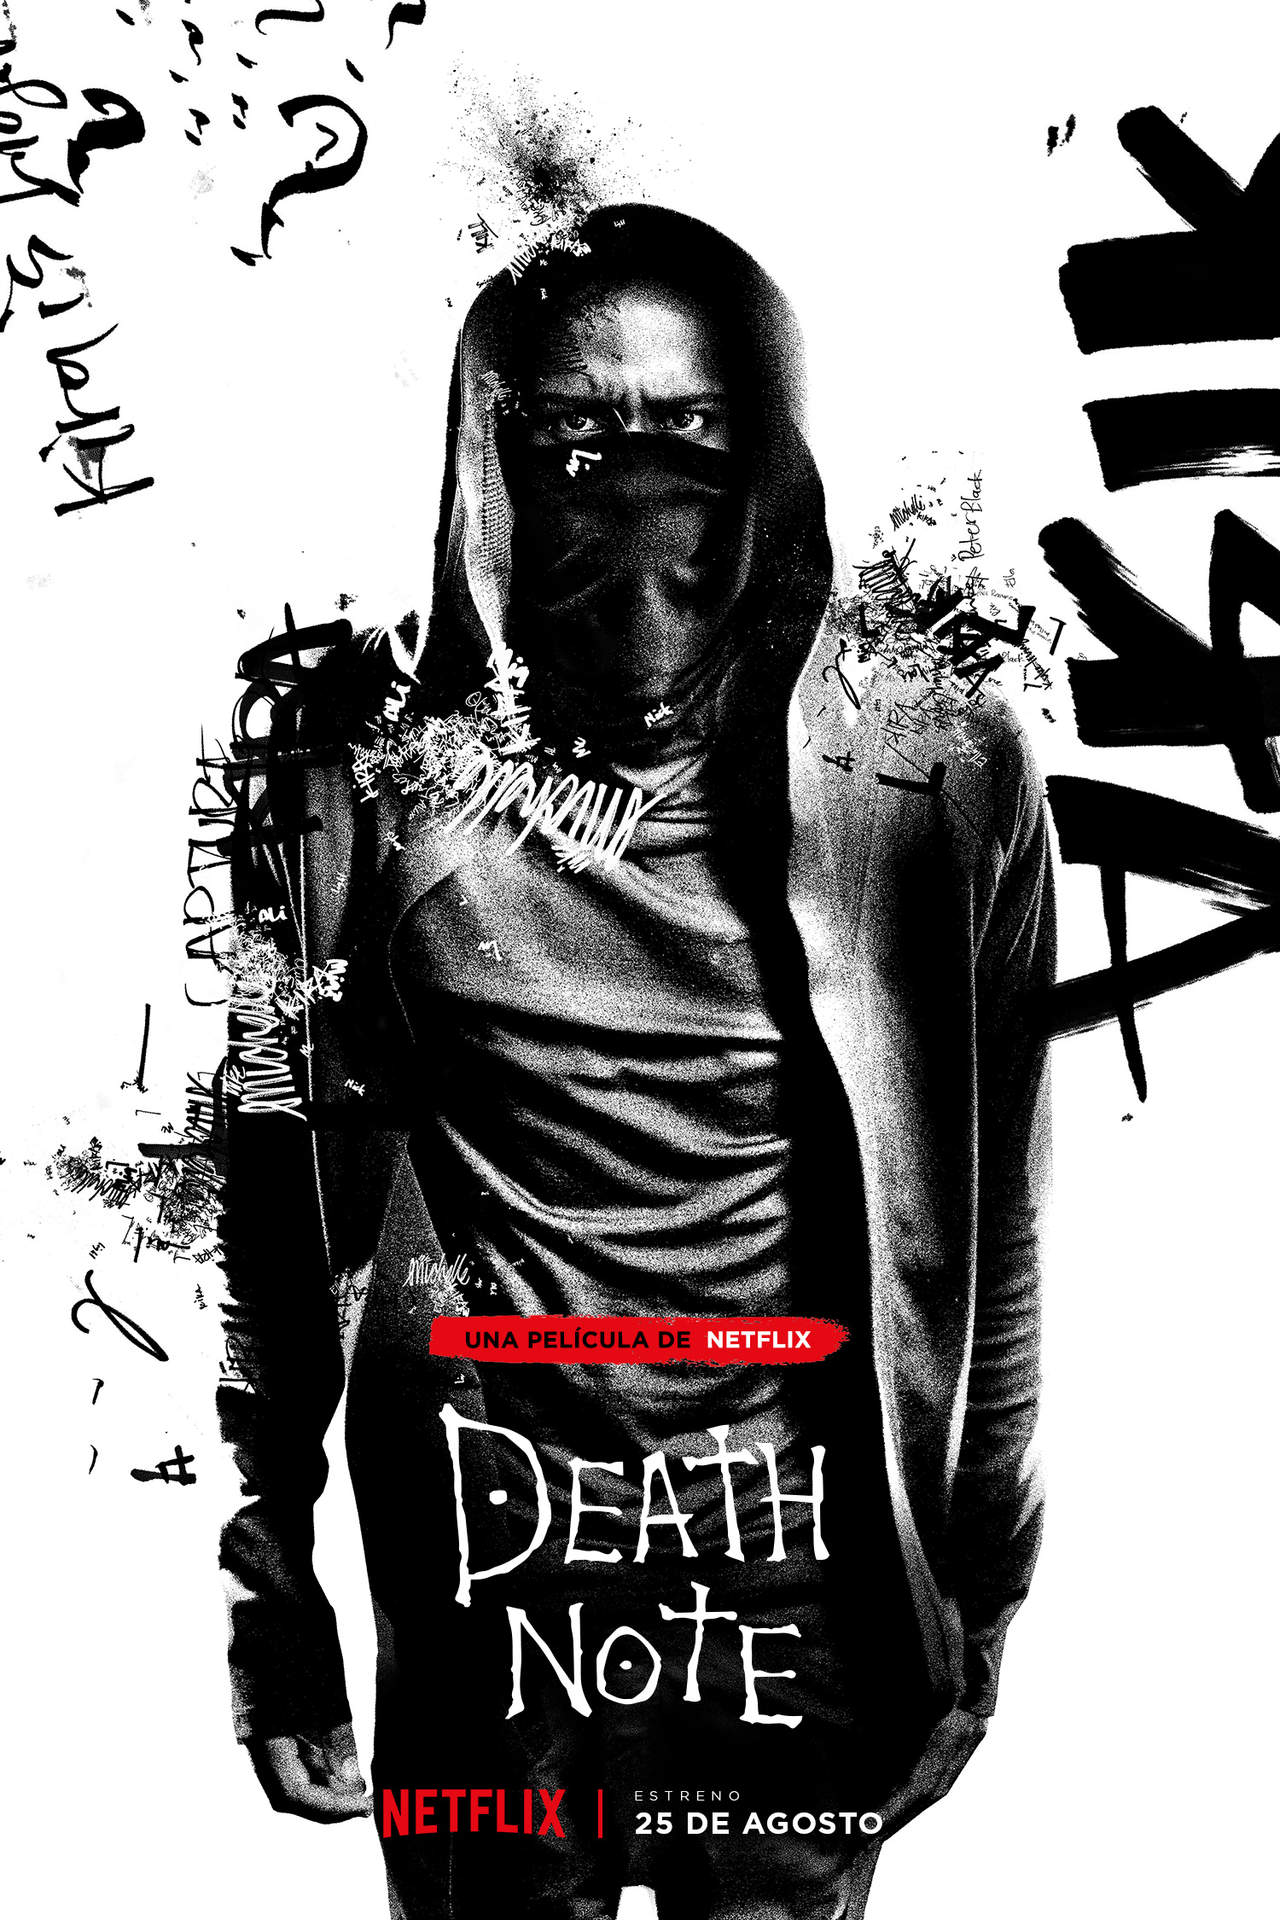 Death Note cuenta la historia de Light un joven que encuentra una libreta que permite acabar con la vida de cualquier individúo con solo escribir su nombre y conocer su rostro.
